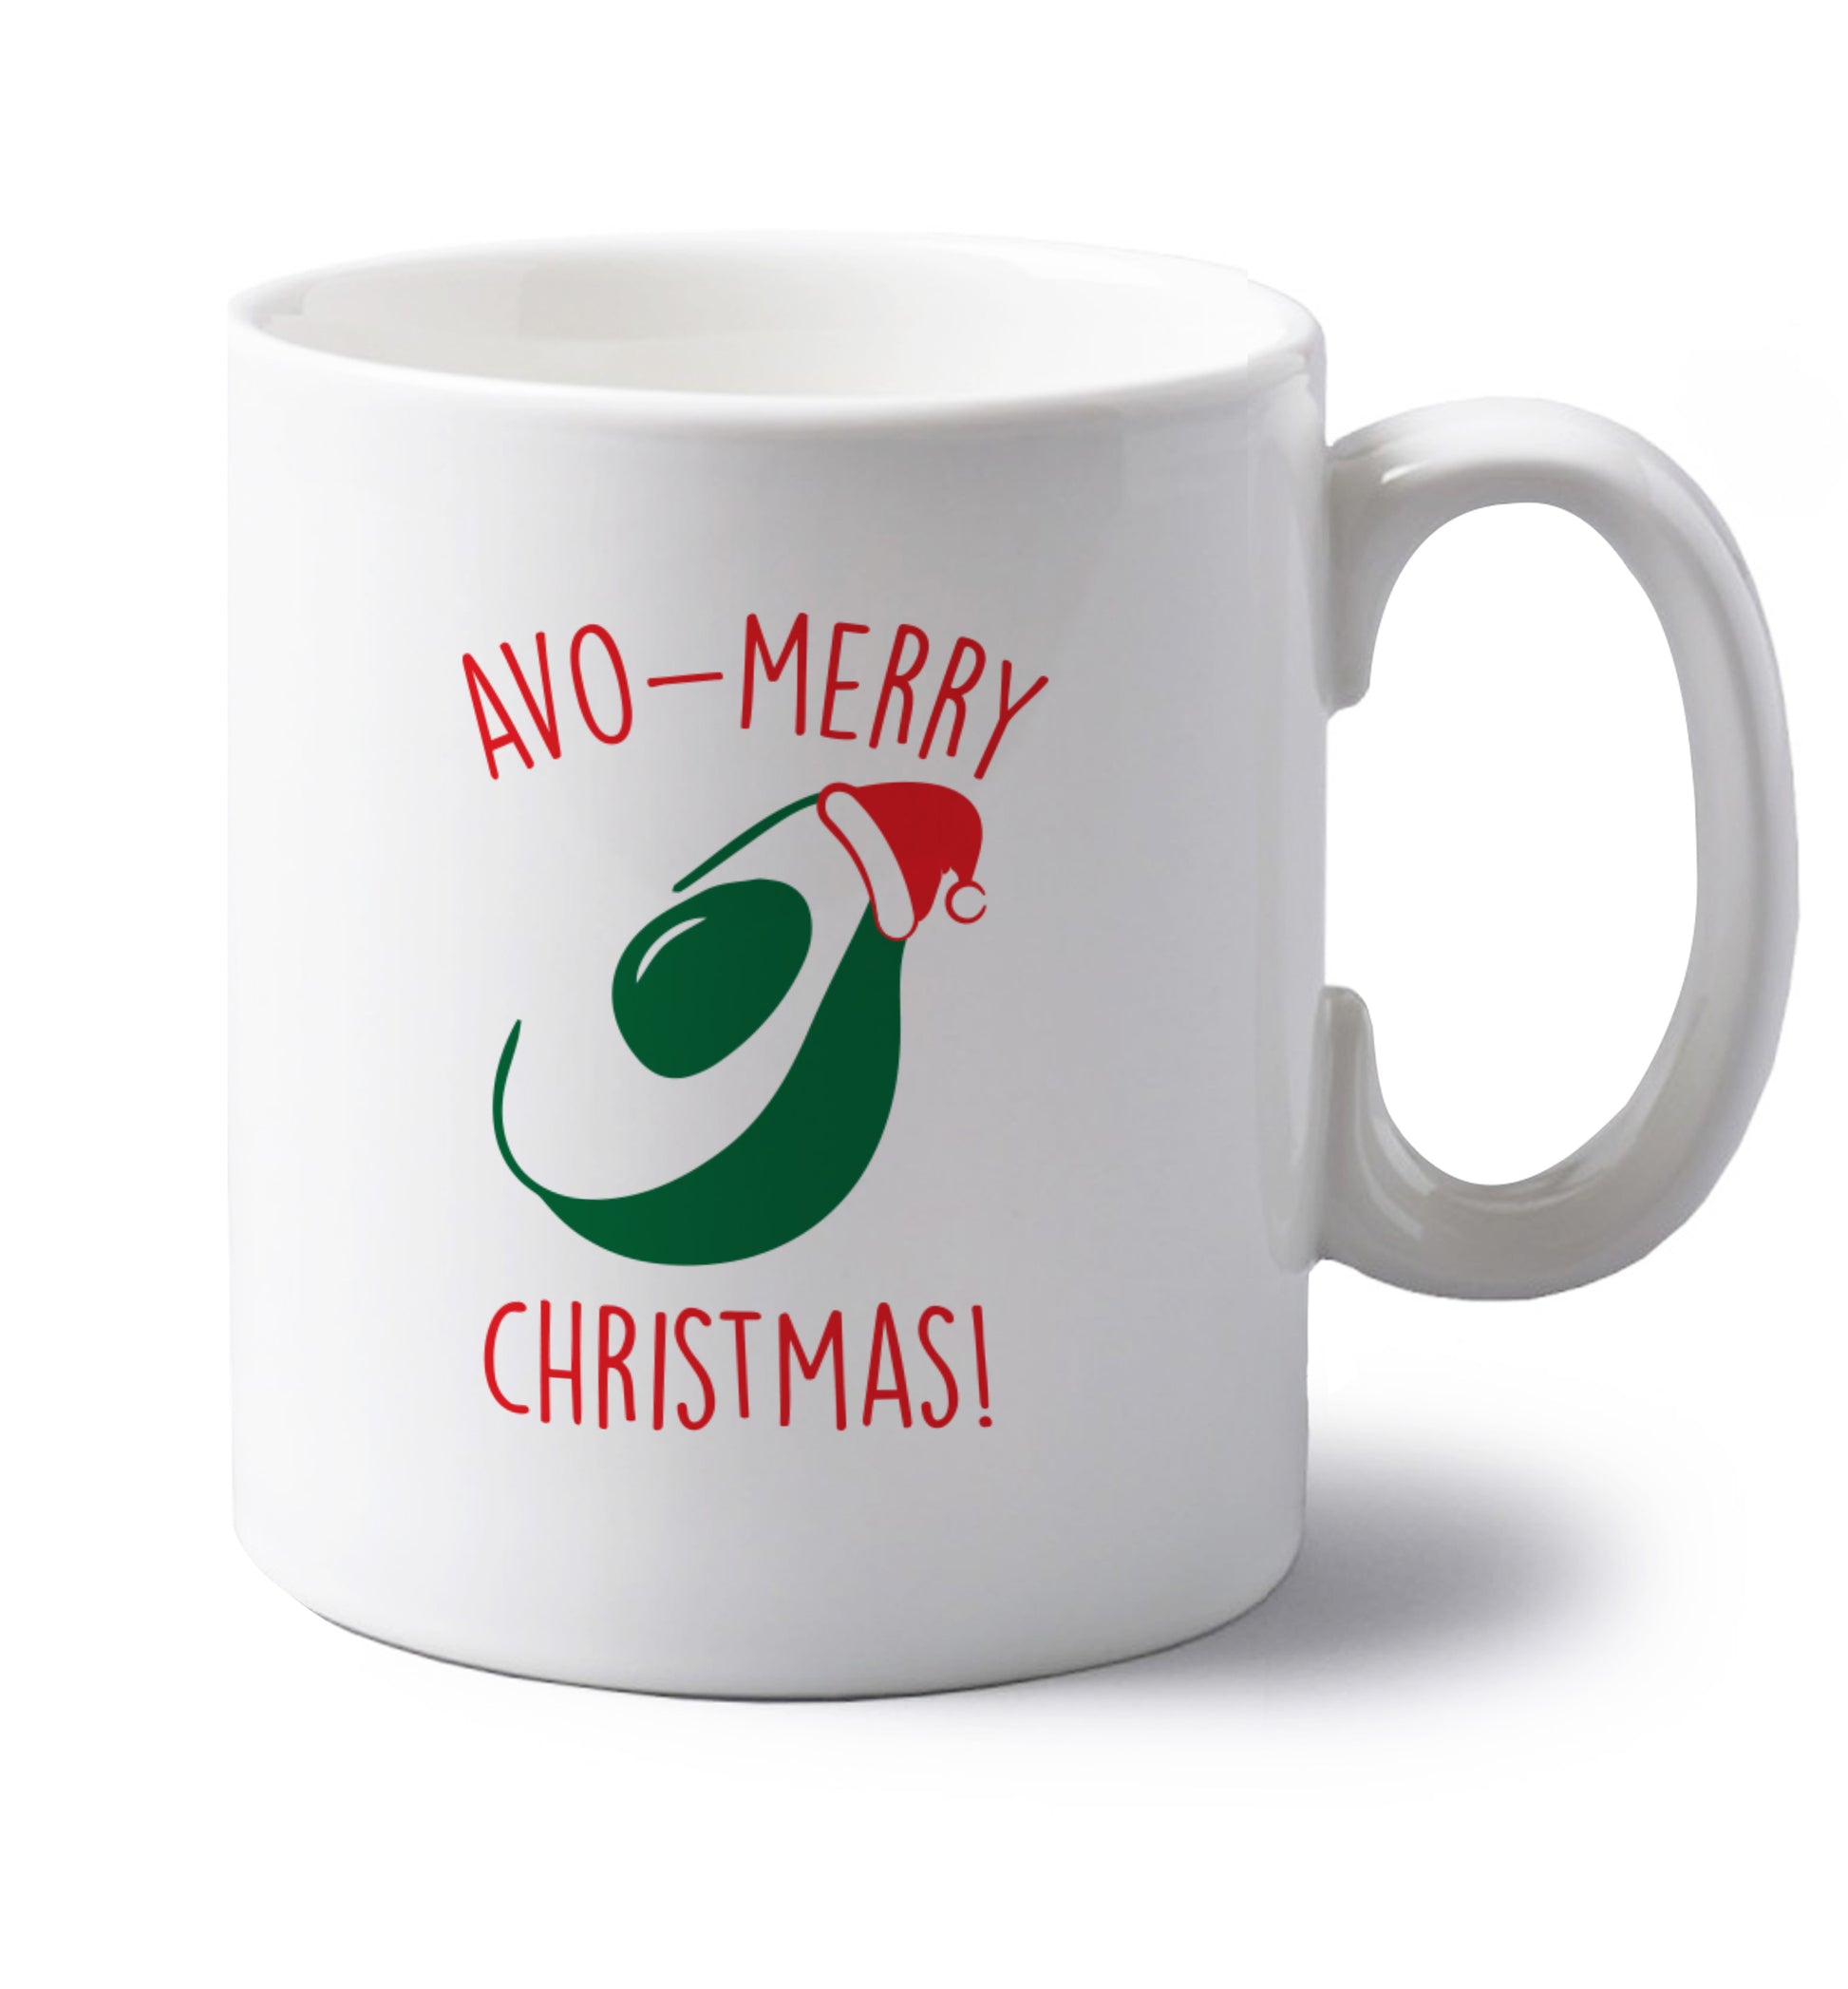 Avo-Merry Christmas left handed white ceramic mug 